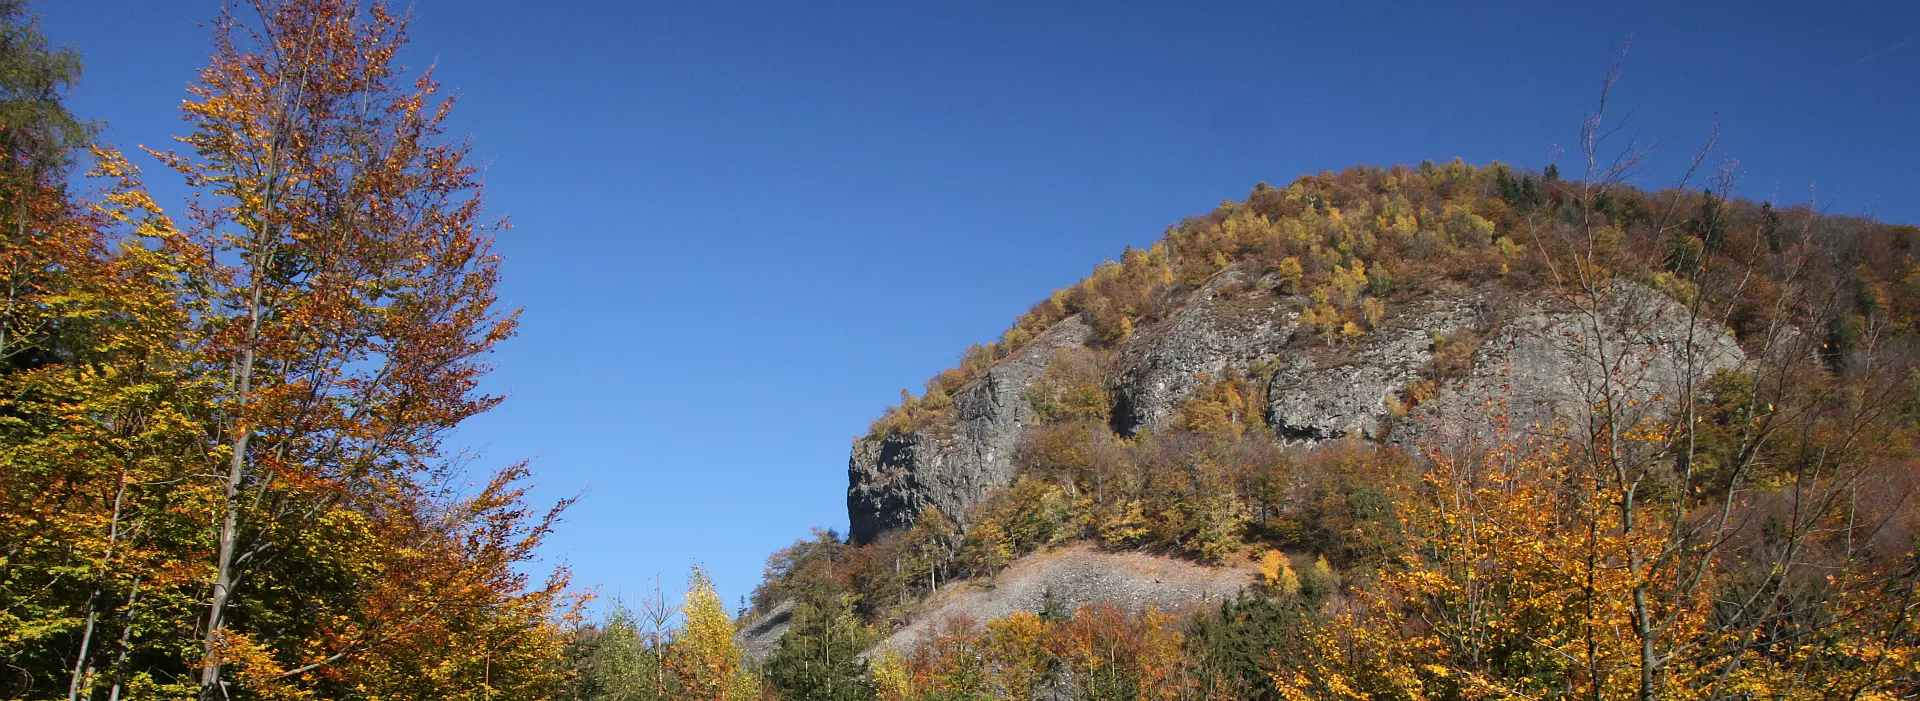 Maloplošná zvláště chráněná území CHKO Lužické hory